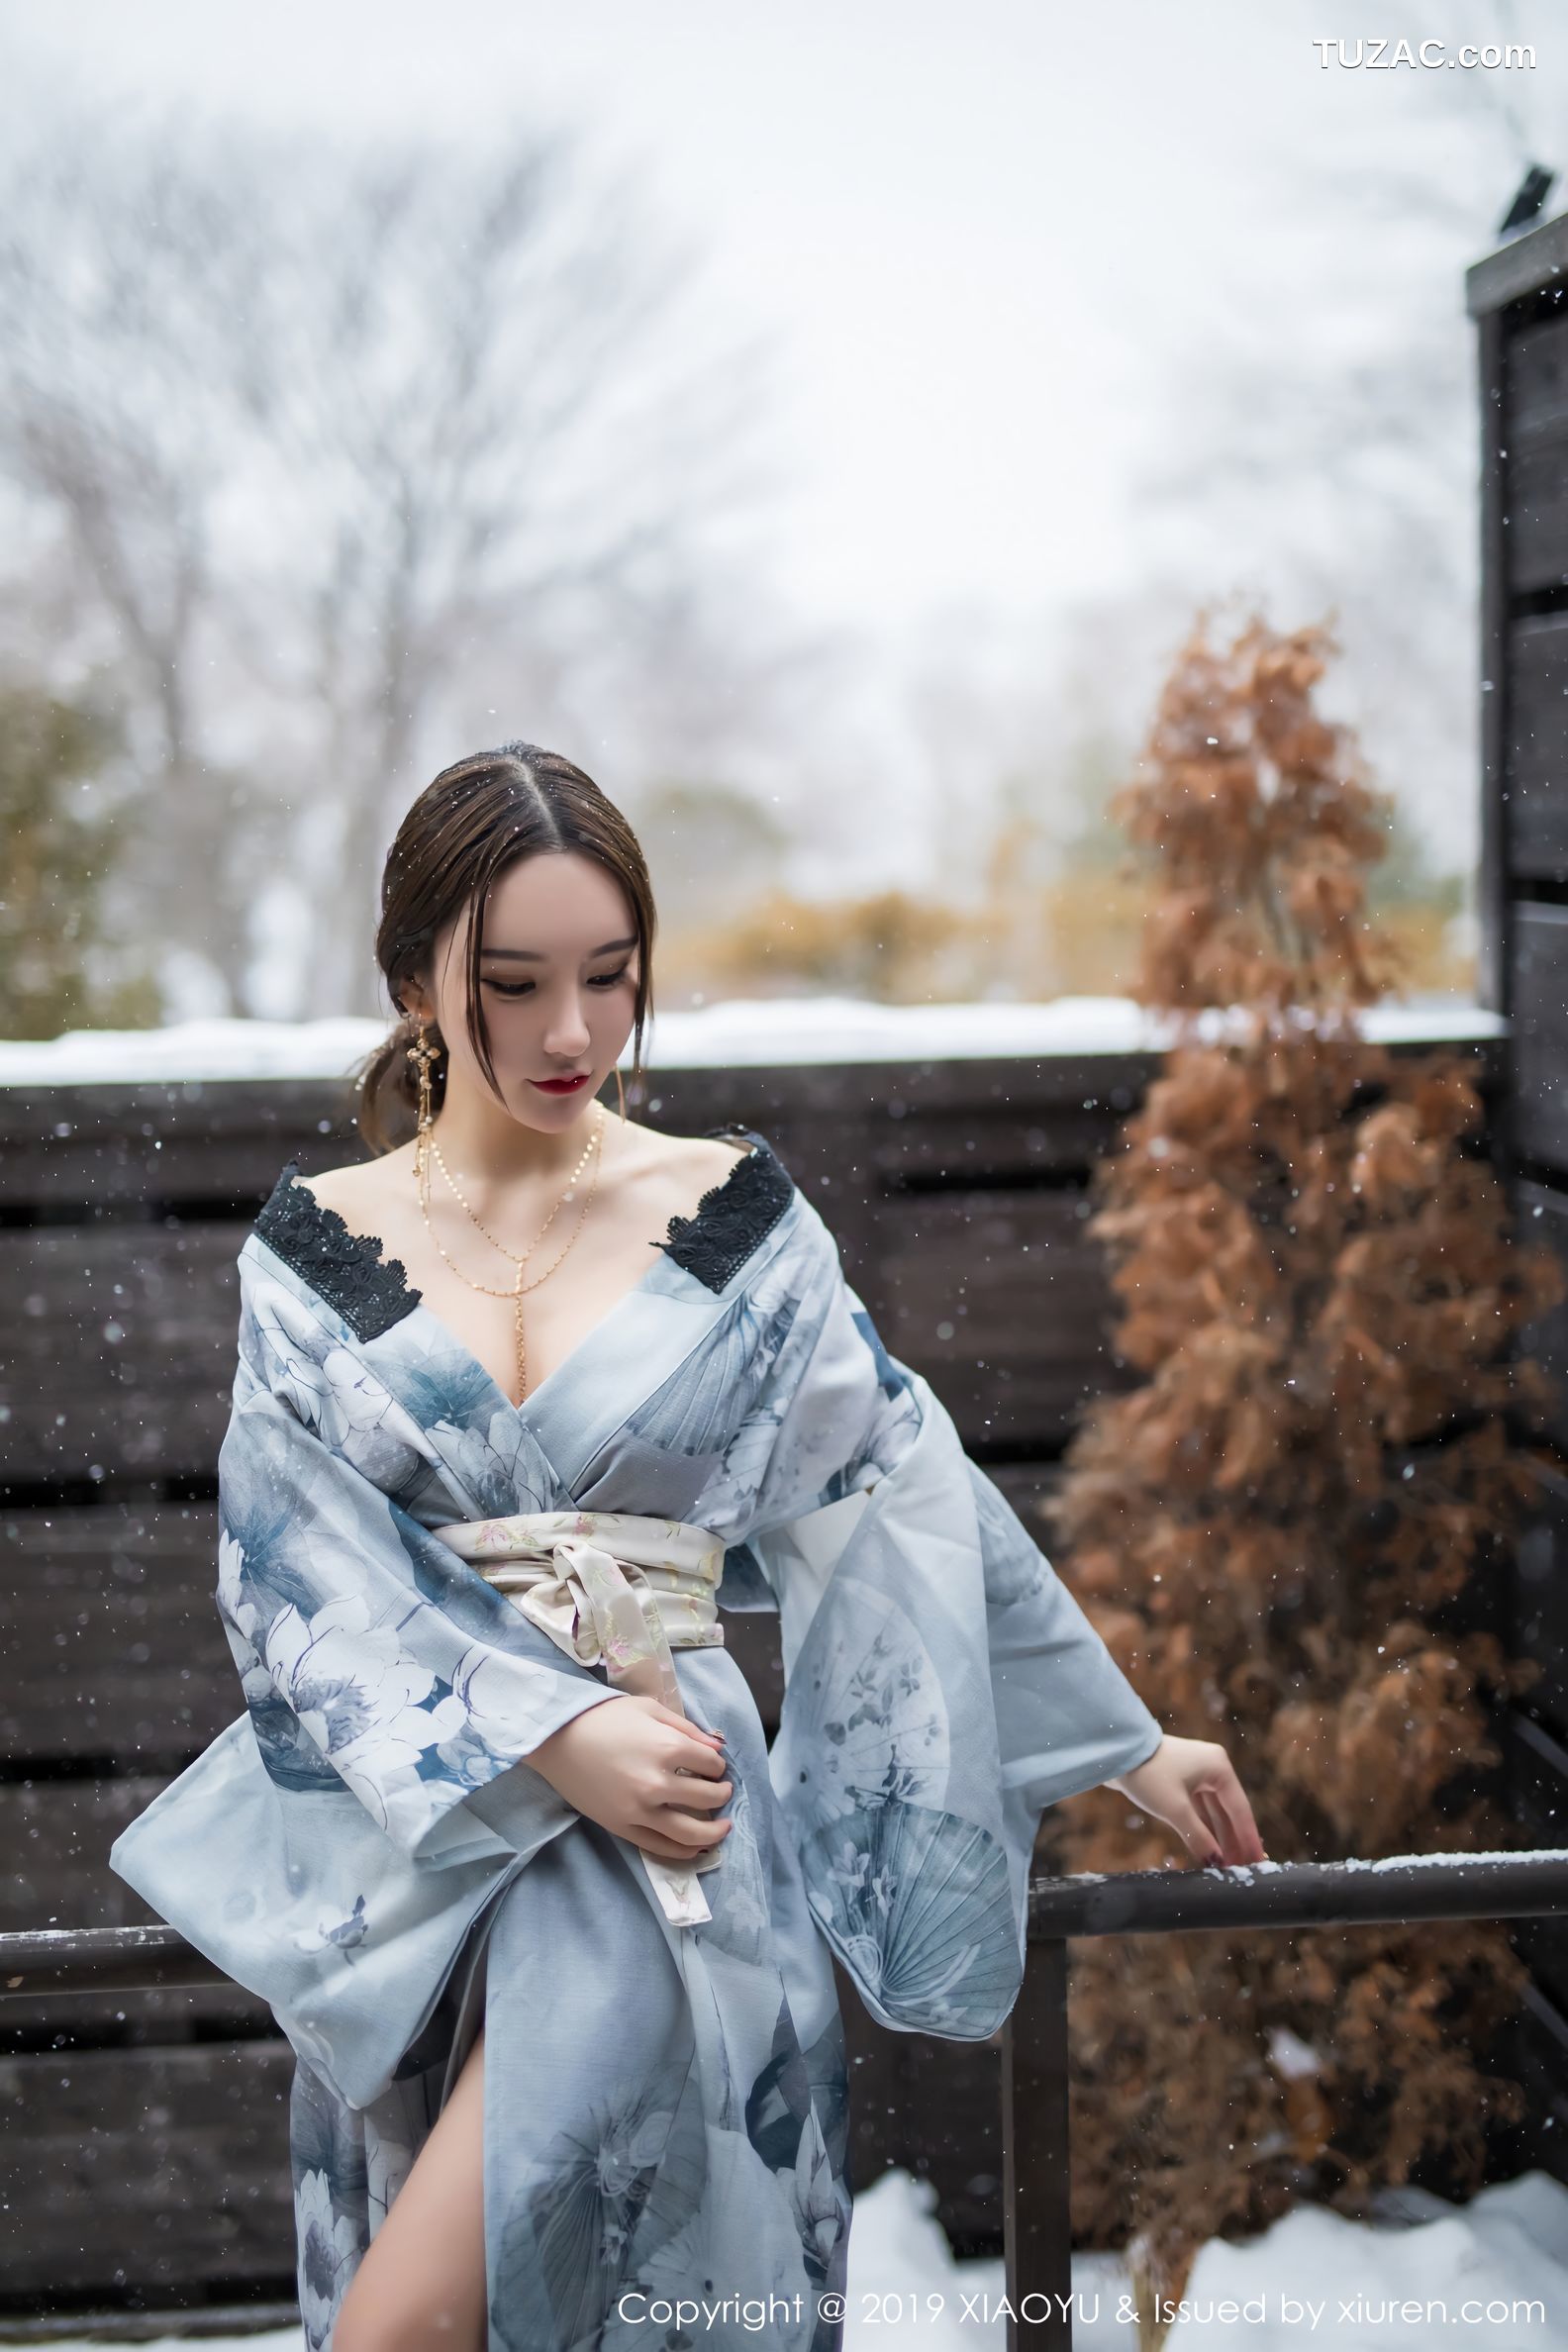 XiaoYu语画界-007-周于希-《雪中有佳人》-2019.01.11